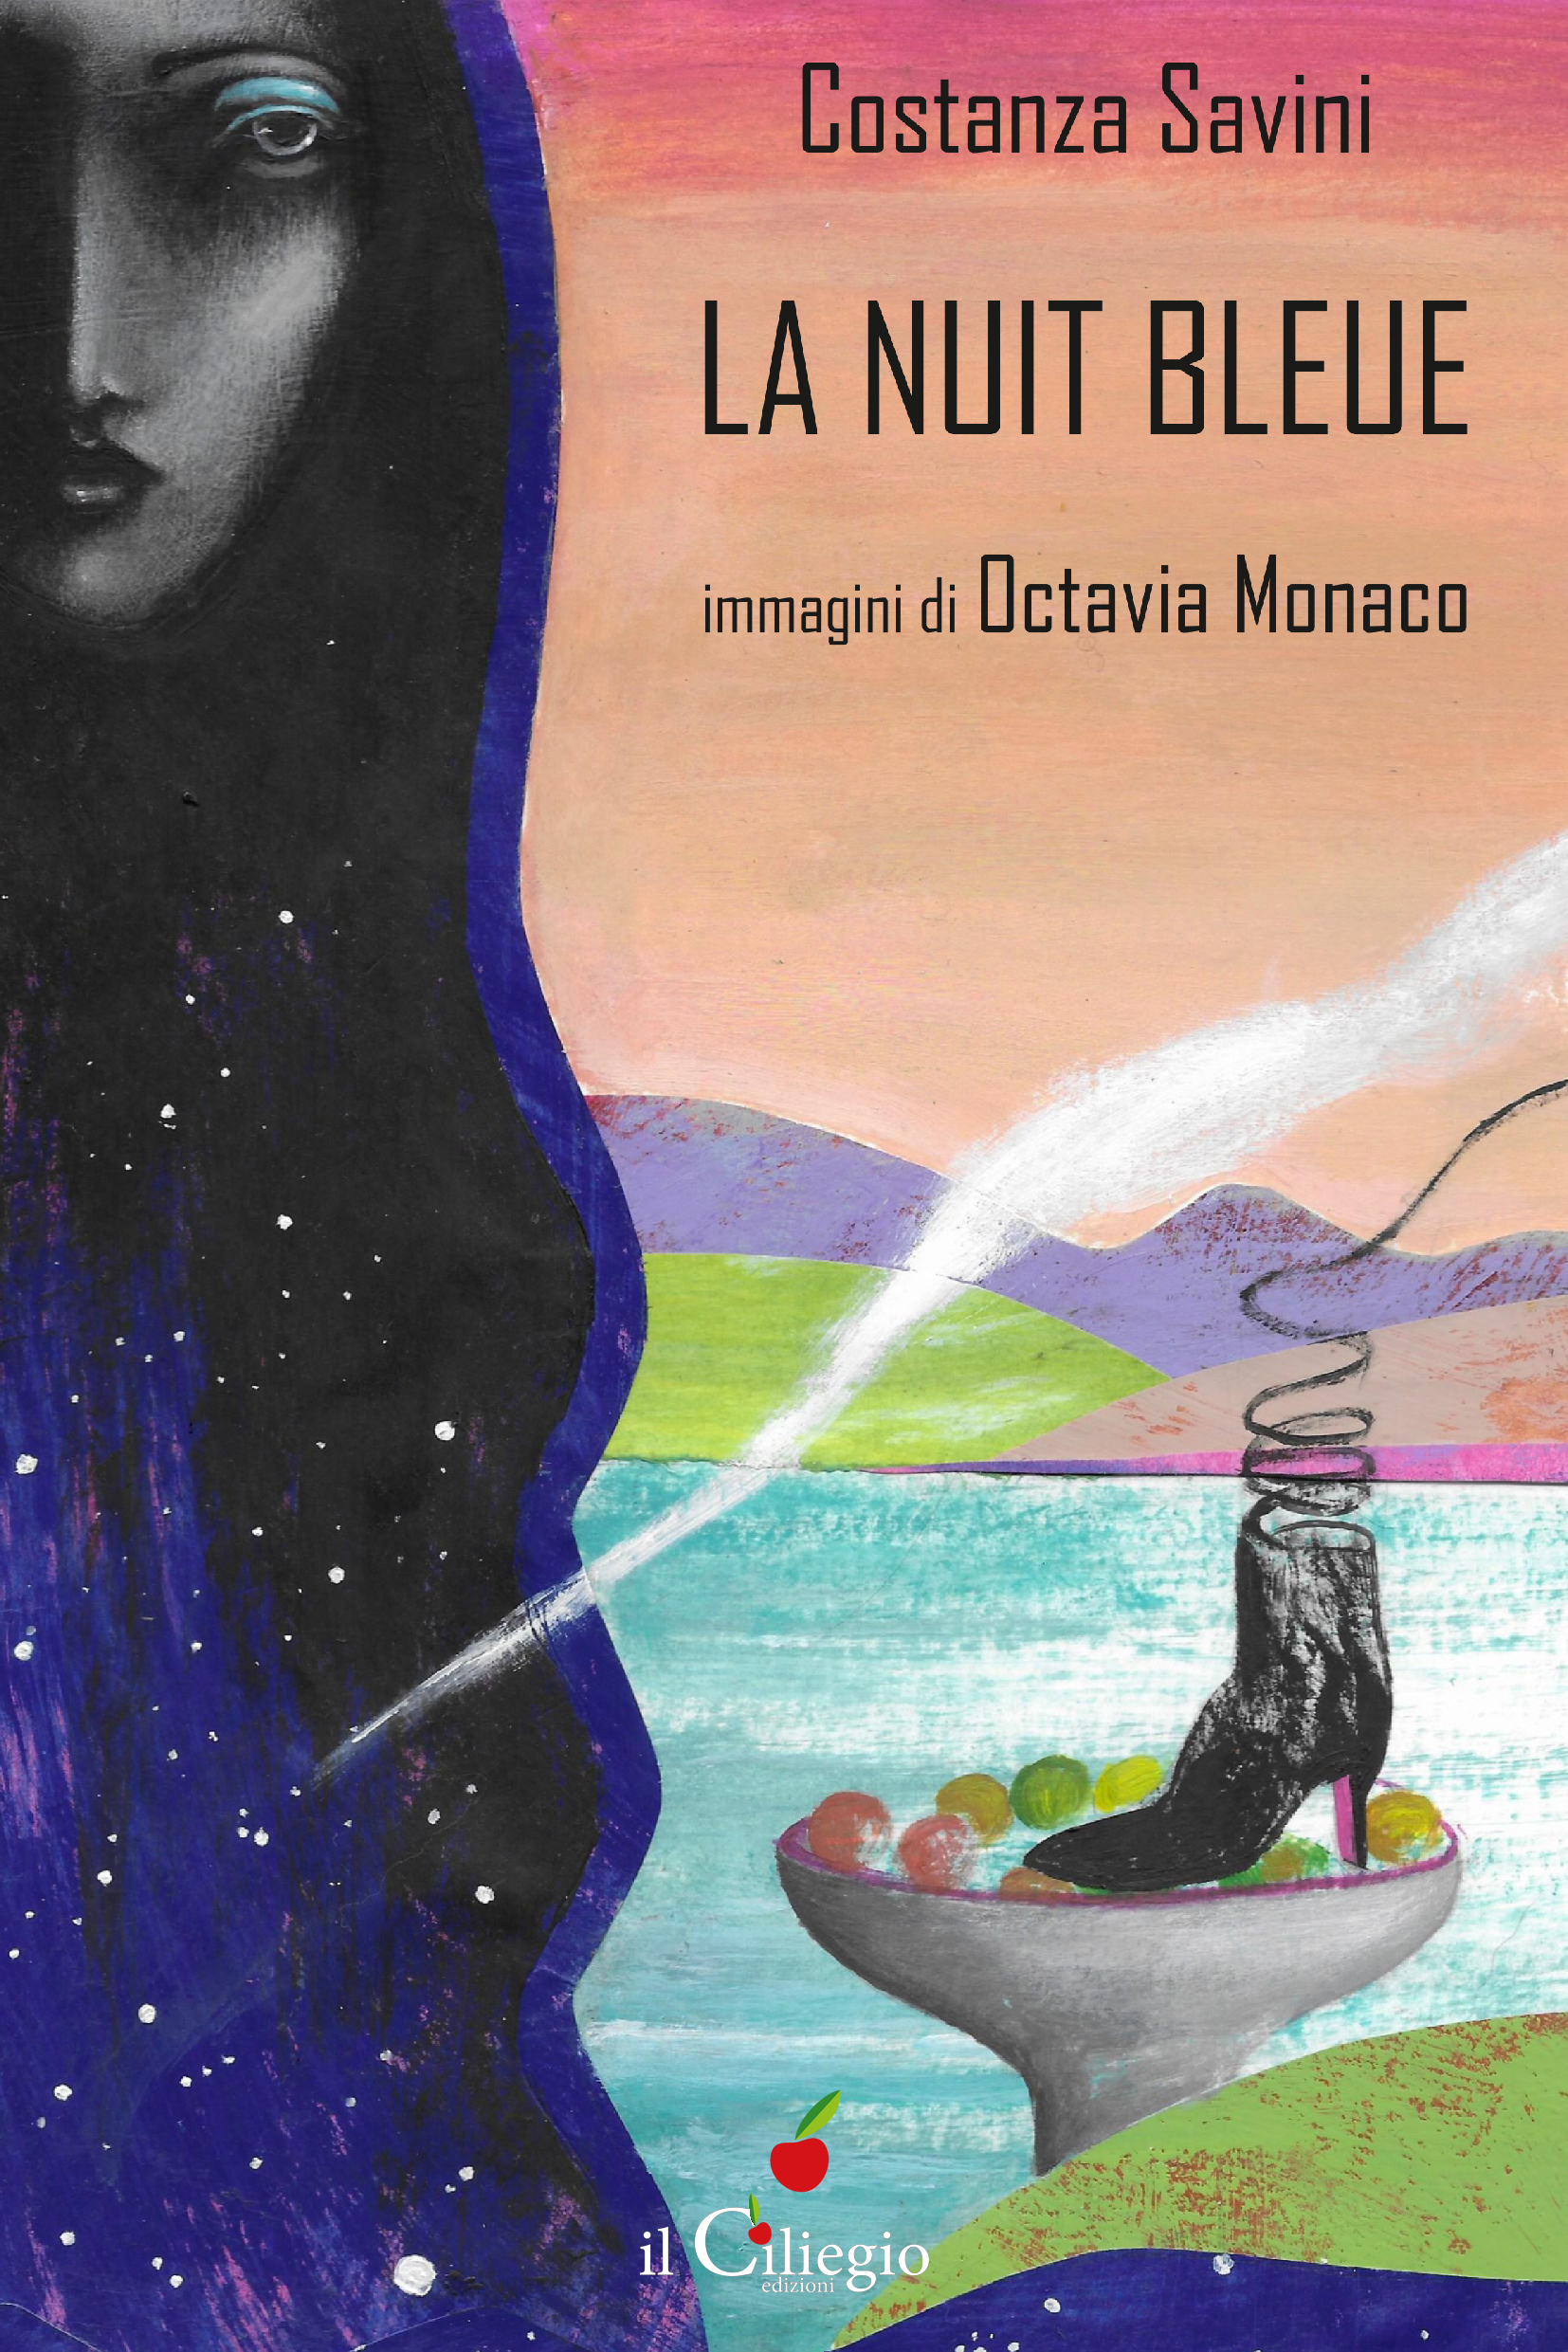 “La Nuit Bleue”, il nuovo romanzo di Costanza Savini con immagini di Octavia Monaco